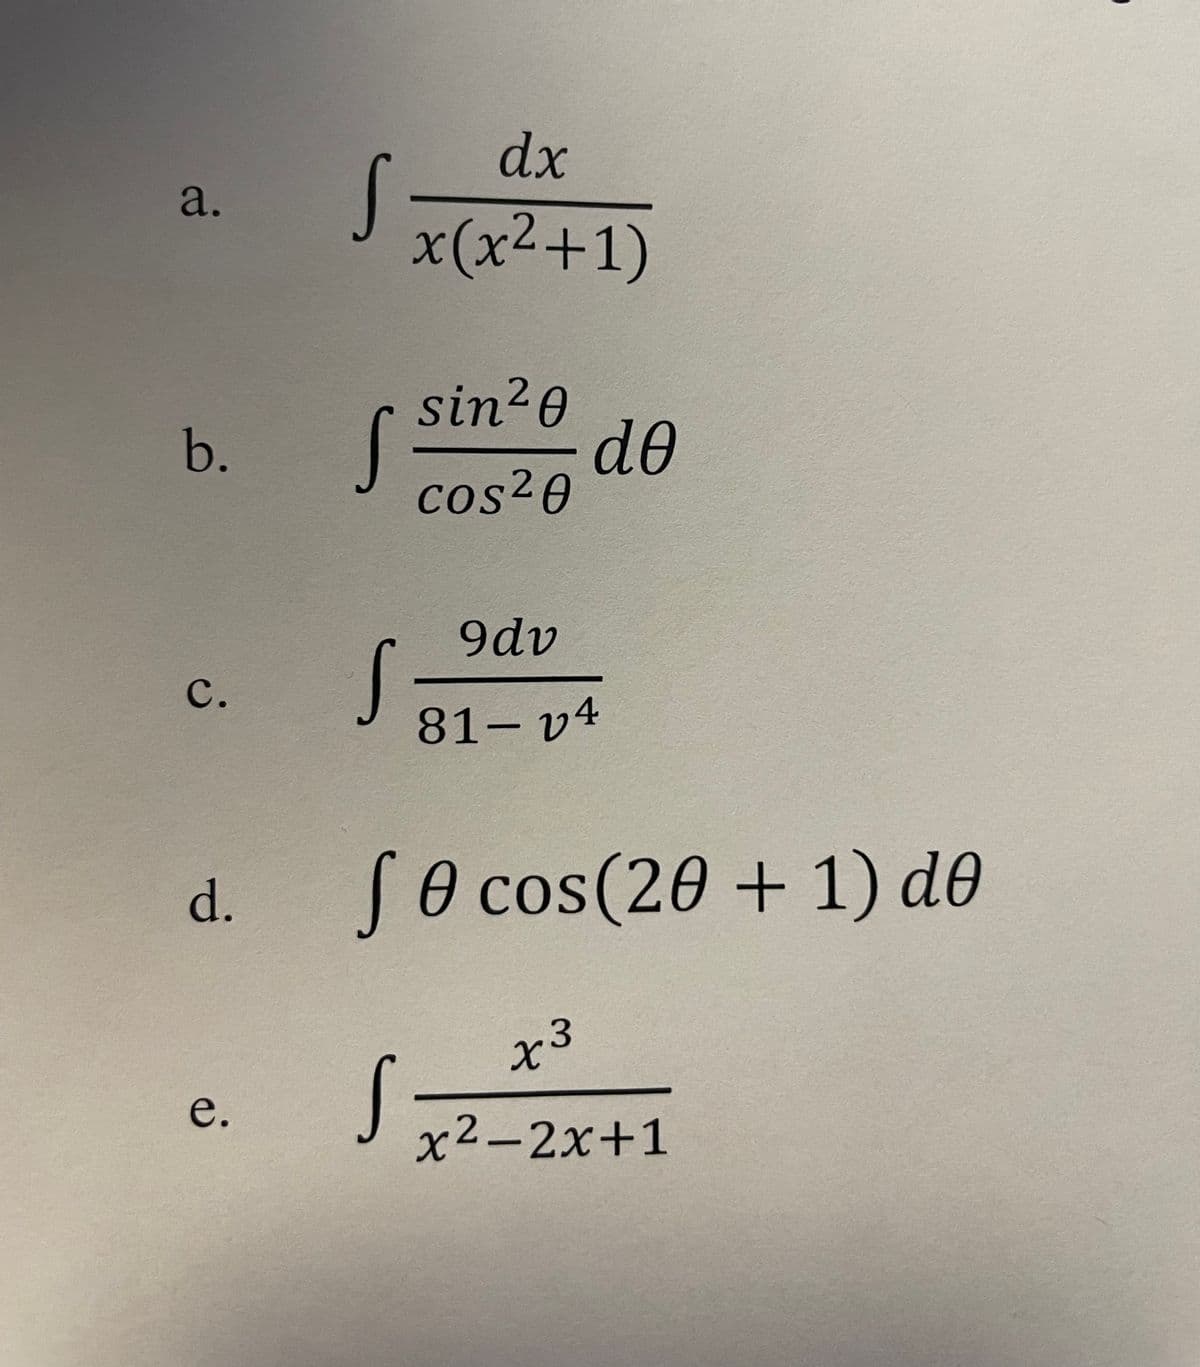 a.
b.
C.
d.
e.
dx
x(x²+1)
S =
sin ²0
S³
S
cos²0
9dv
81-v4
de
fe cos(20 + 1) de
Ө
S
+3
x²-2x+1